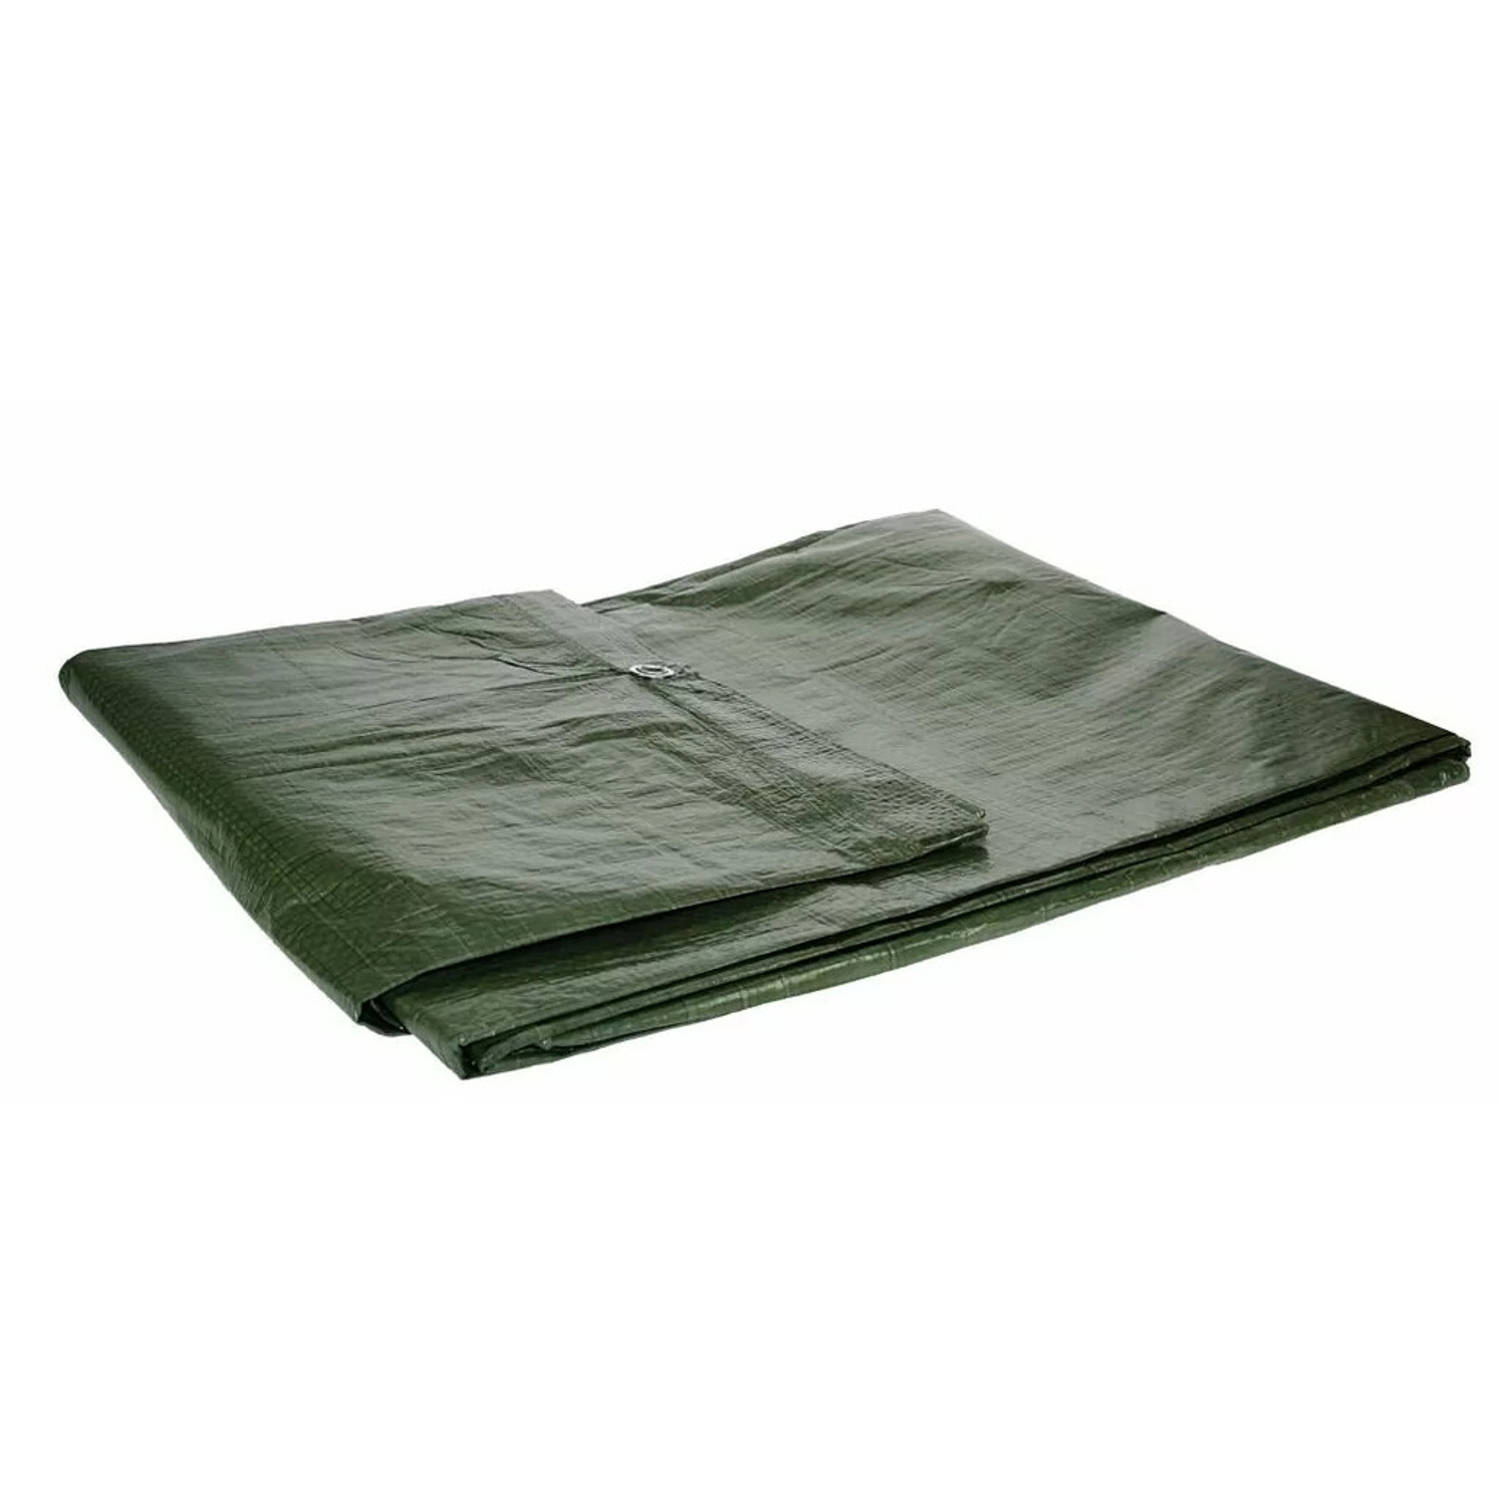 Afdekzeil/dekzeil groen waterdicht kunststof 90 gr/m2 - 500 x 400 cm - Afdekzeilen